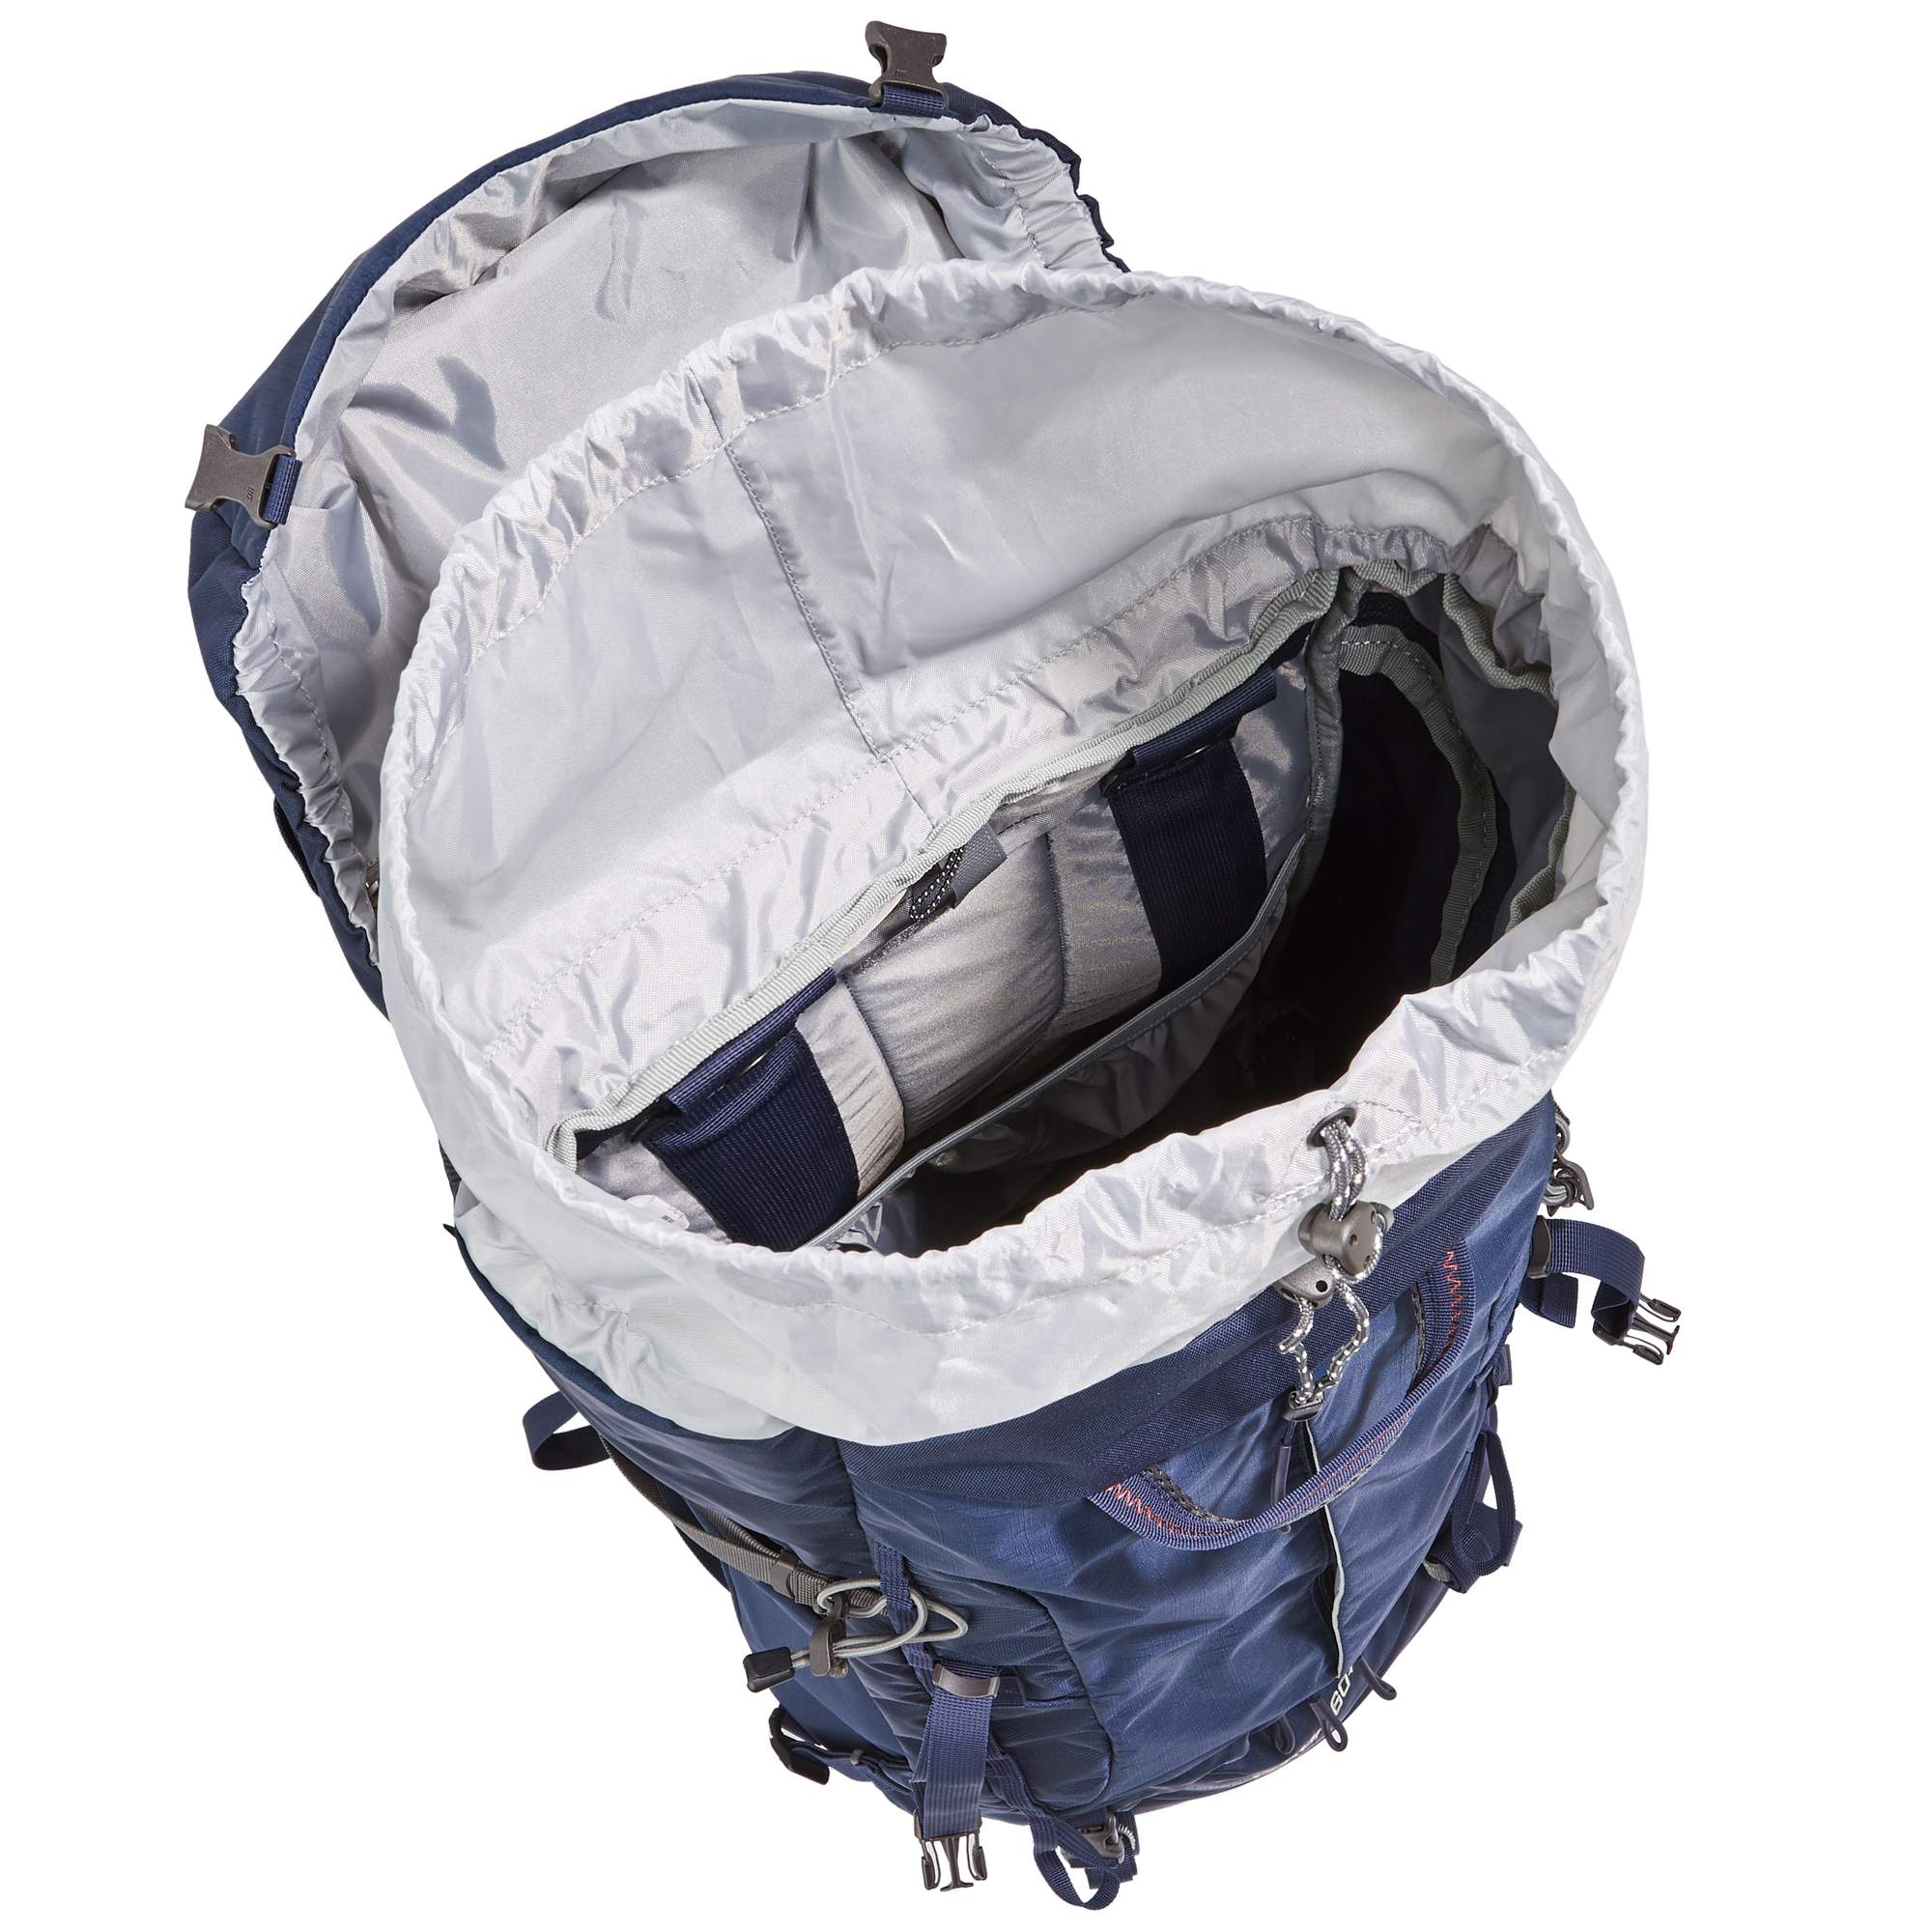 Классический туристический рюкзак в обновленном дизайне Tatonka Yukon 60+10